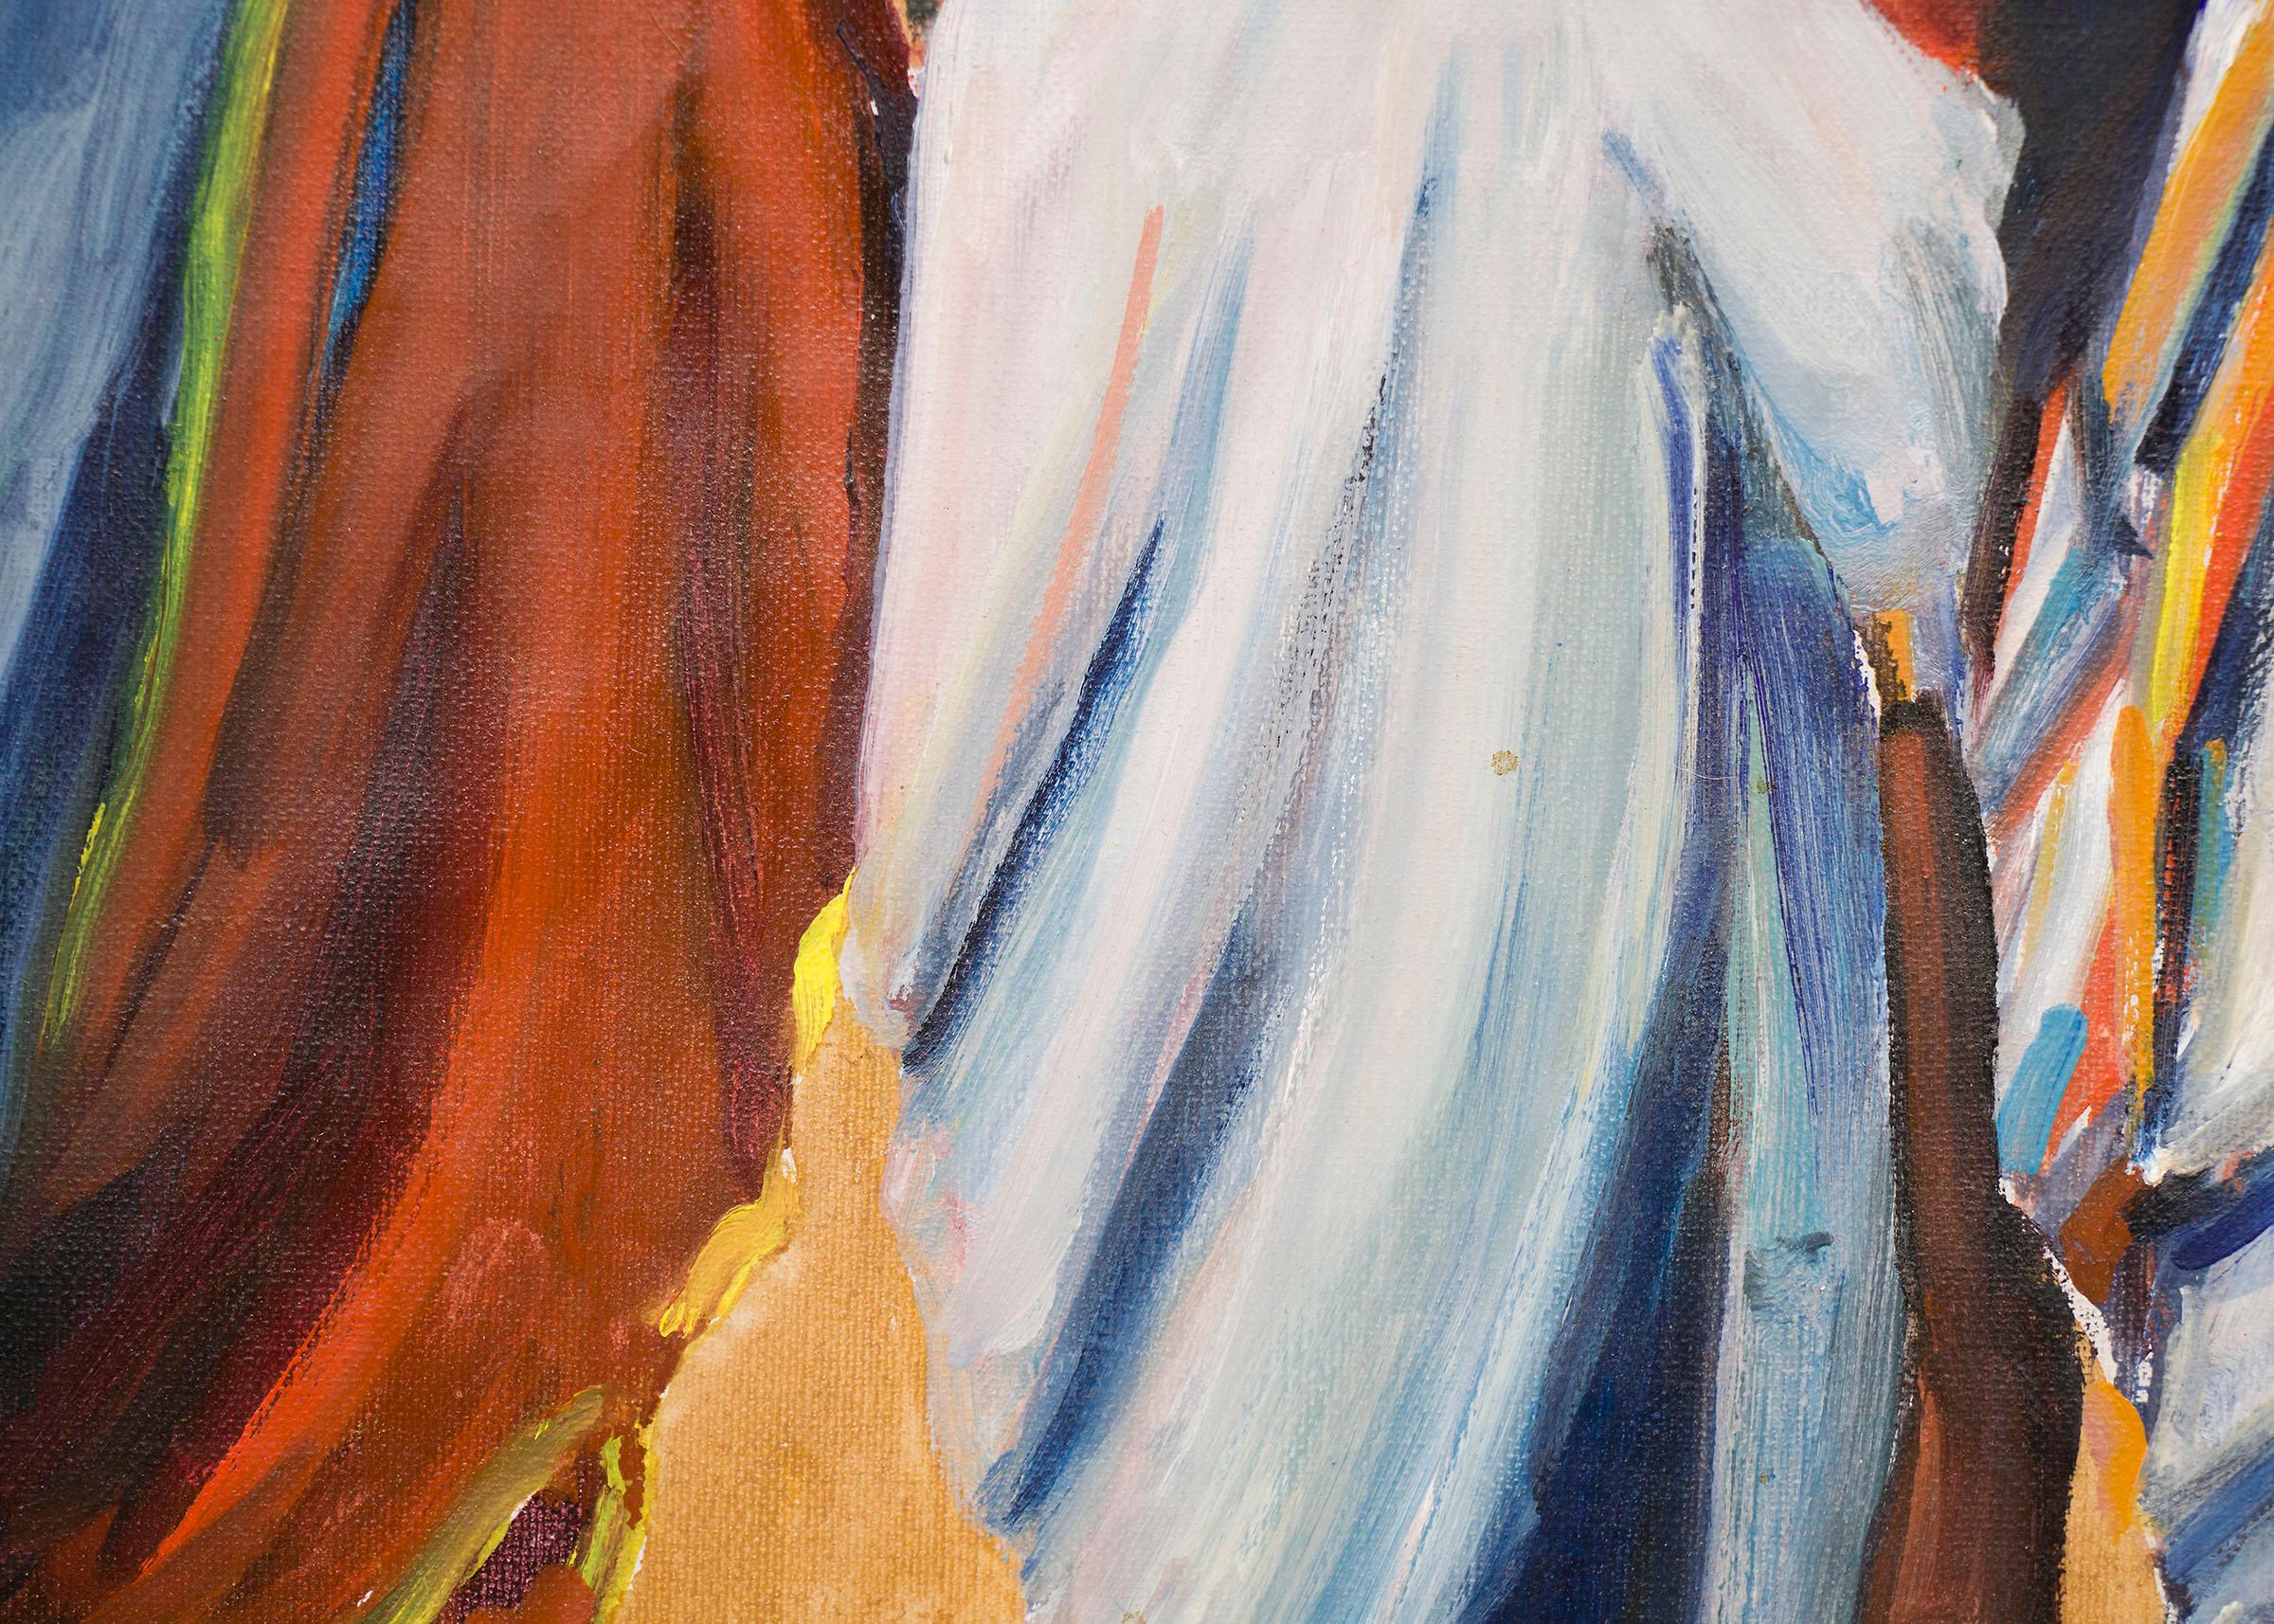 Peinture à l'huile originale du 20e siècle de Wolfgang Pogzeba (1936-1982) représentant des personnages amérindiens debout dans des couvertures lumineuses avec des bâtiments en adobe en arrière-plan à Taos Pueblo, au Nouveau-Mexique.   Présenté dans